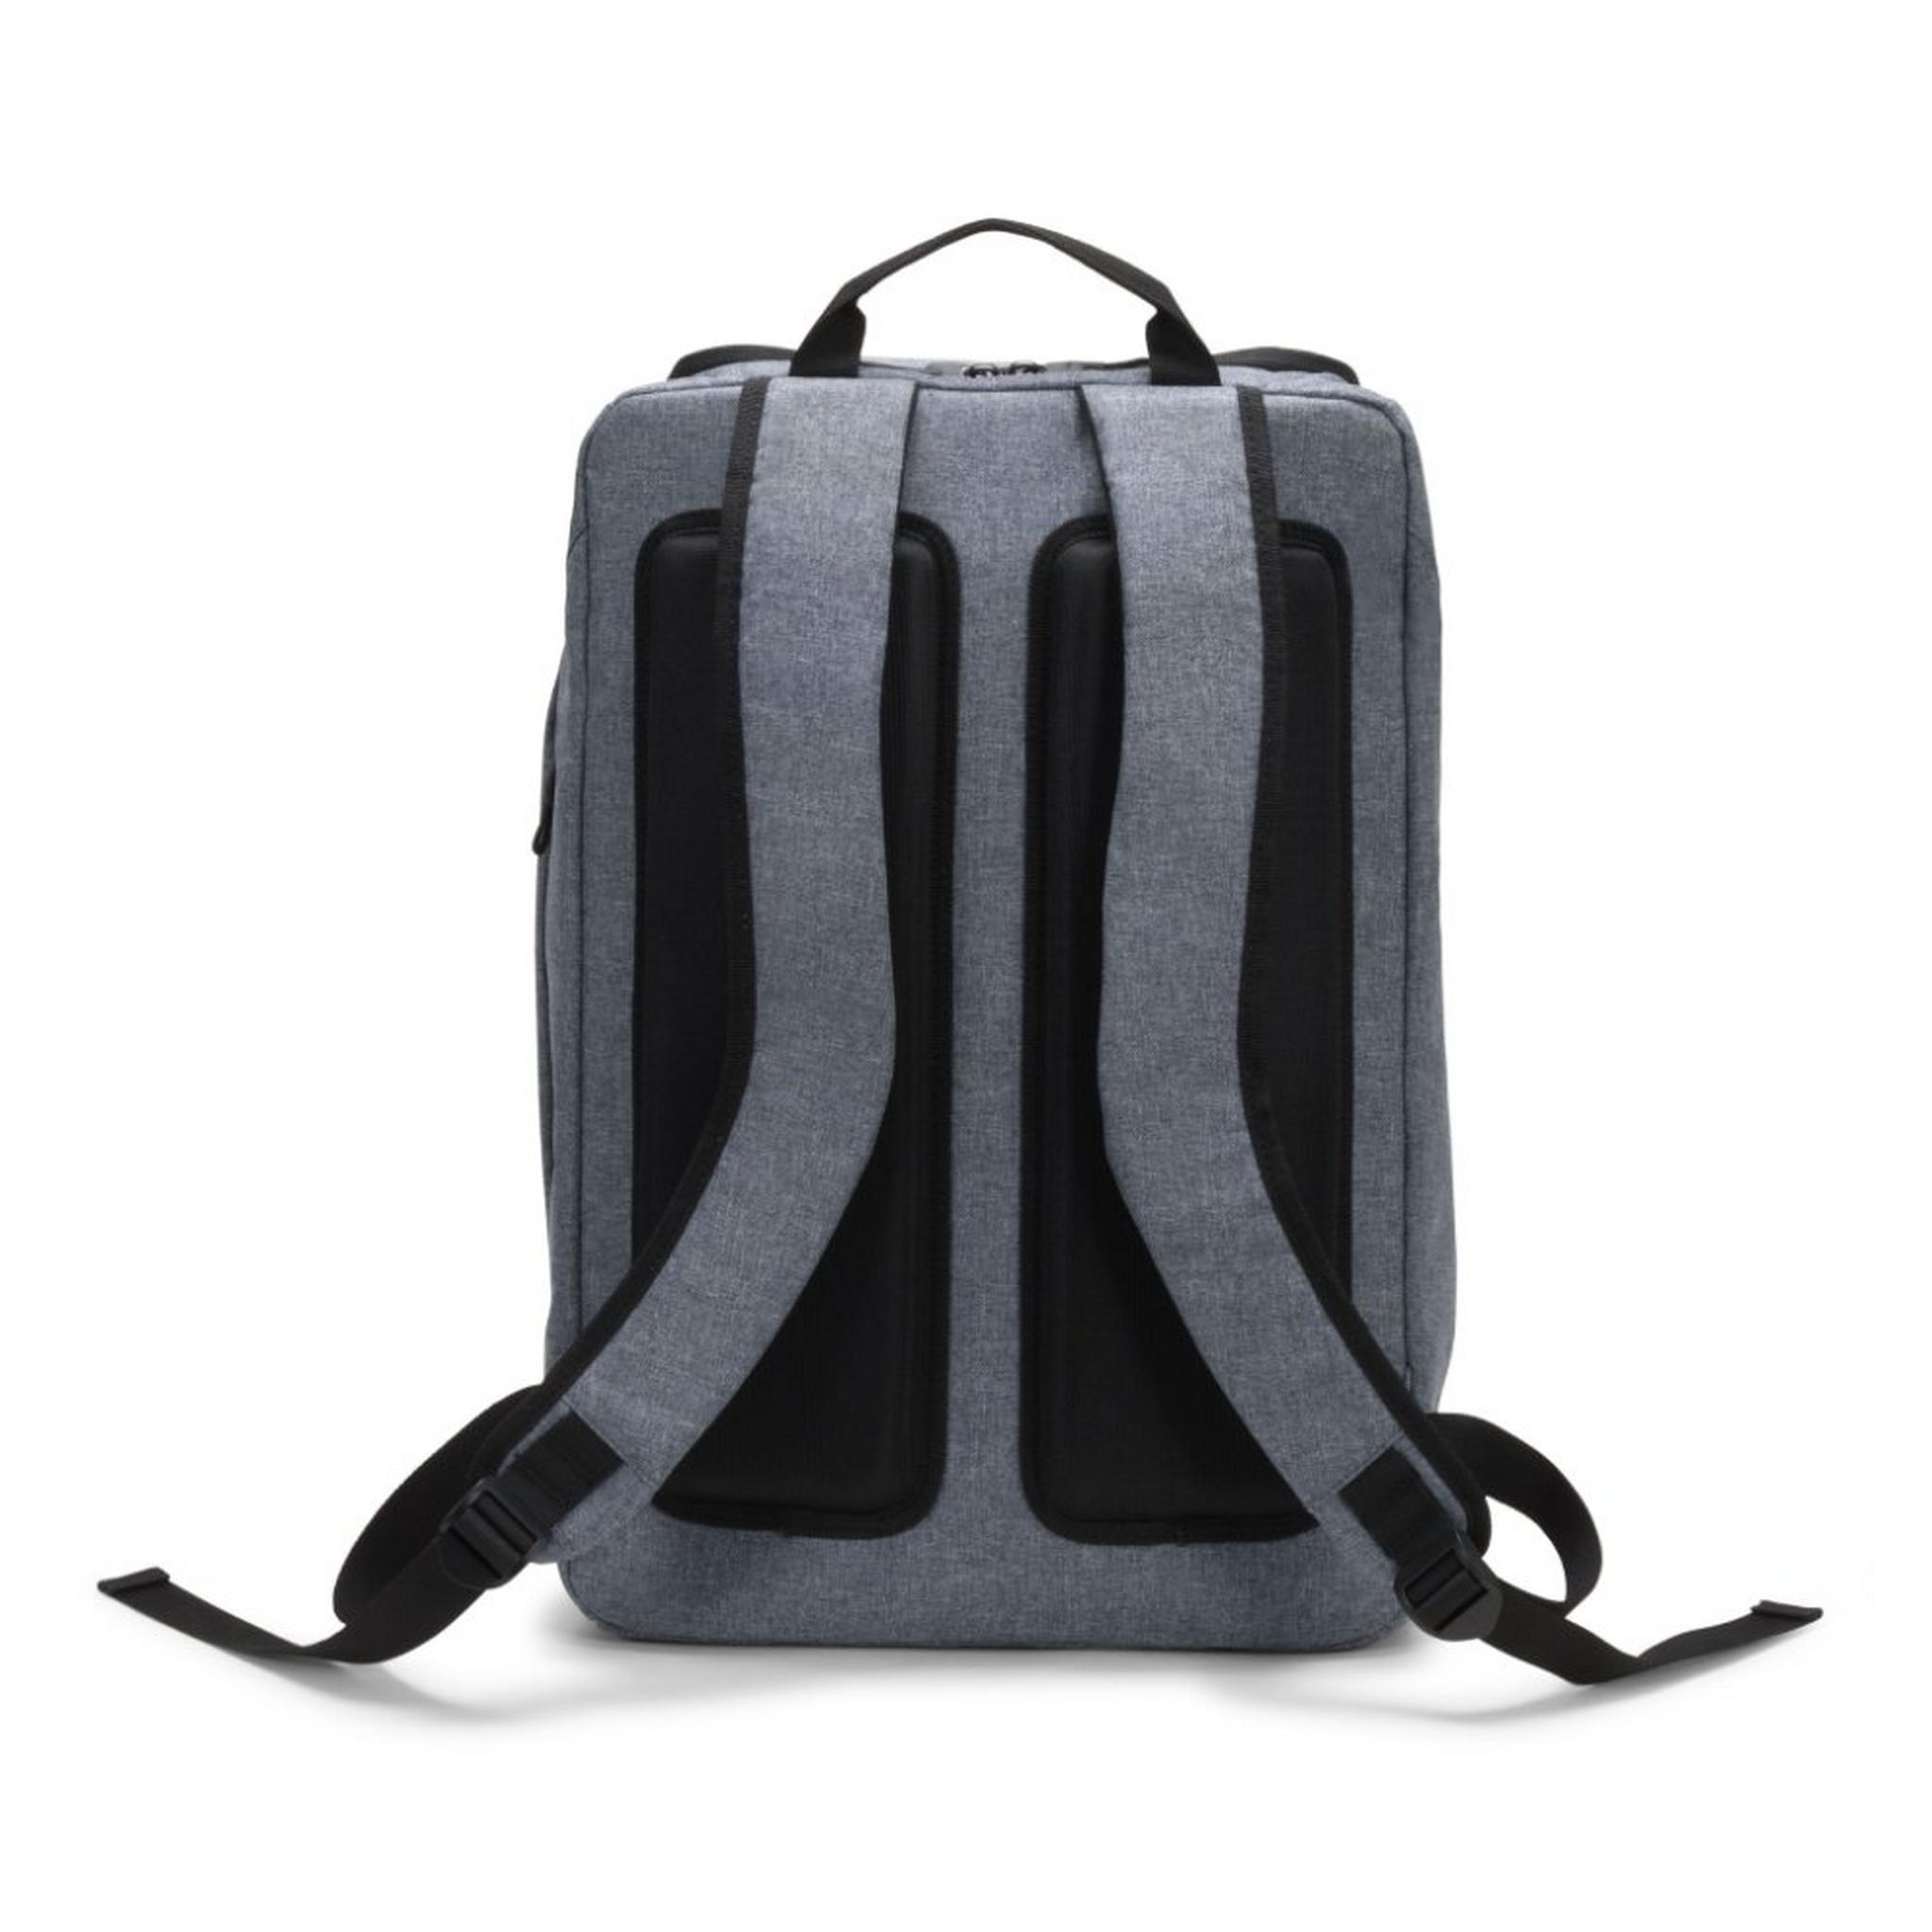 حقيبة الظهر ايكو موشن للابتوب بحجم 15.6 بوصة من ديكوتا - أزرق